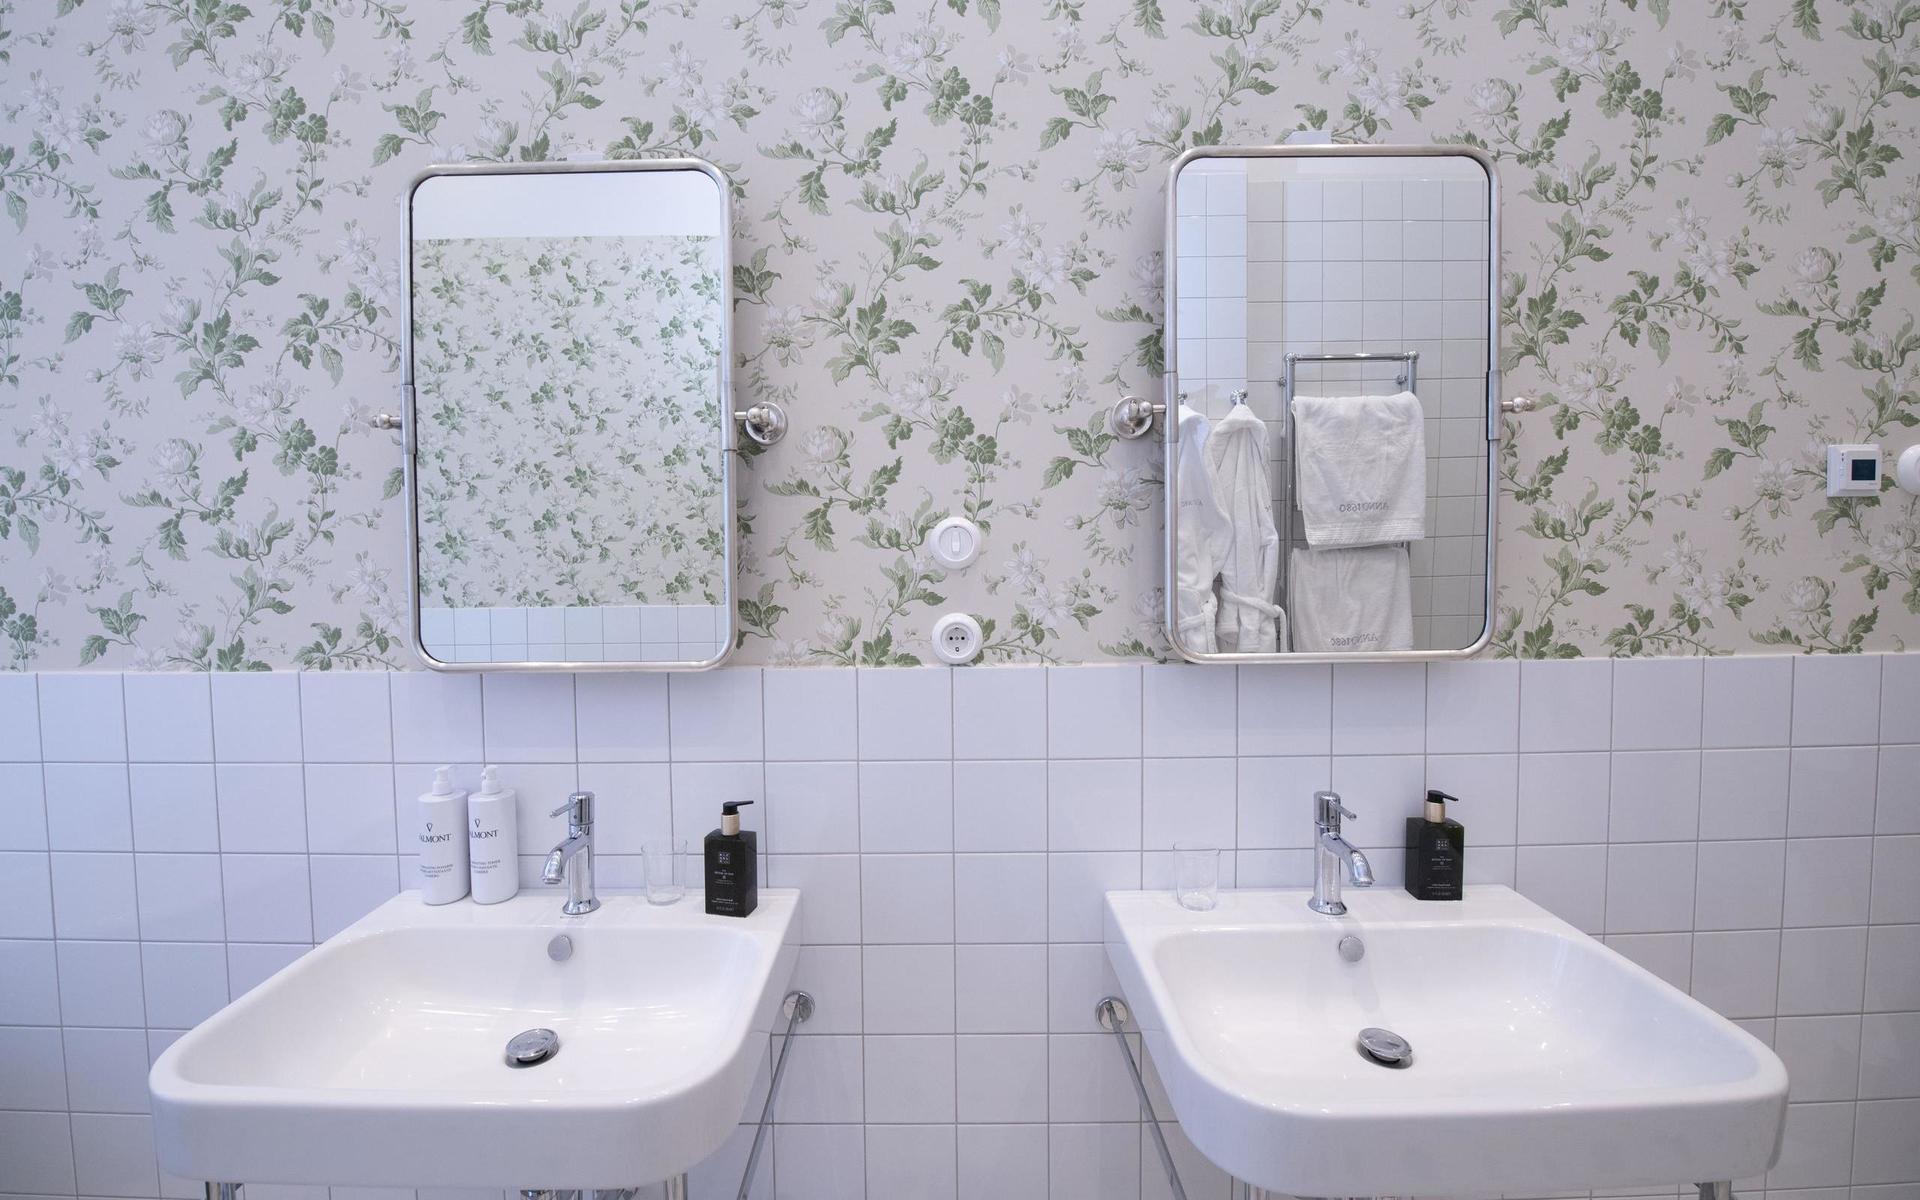 Dubbel uppsättning av handfat gör det här badrummet både praktiskt och vackert.